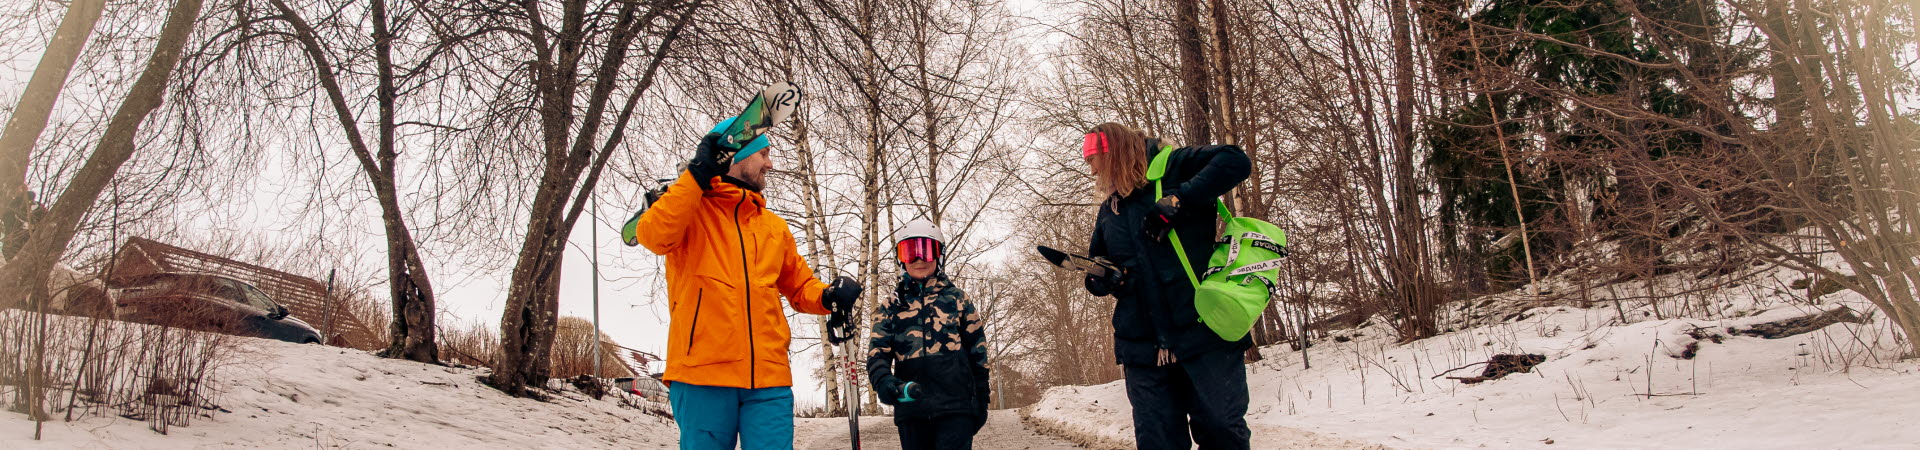 Familj med skidor på väg till backe